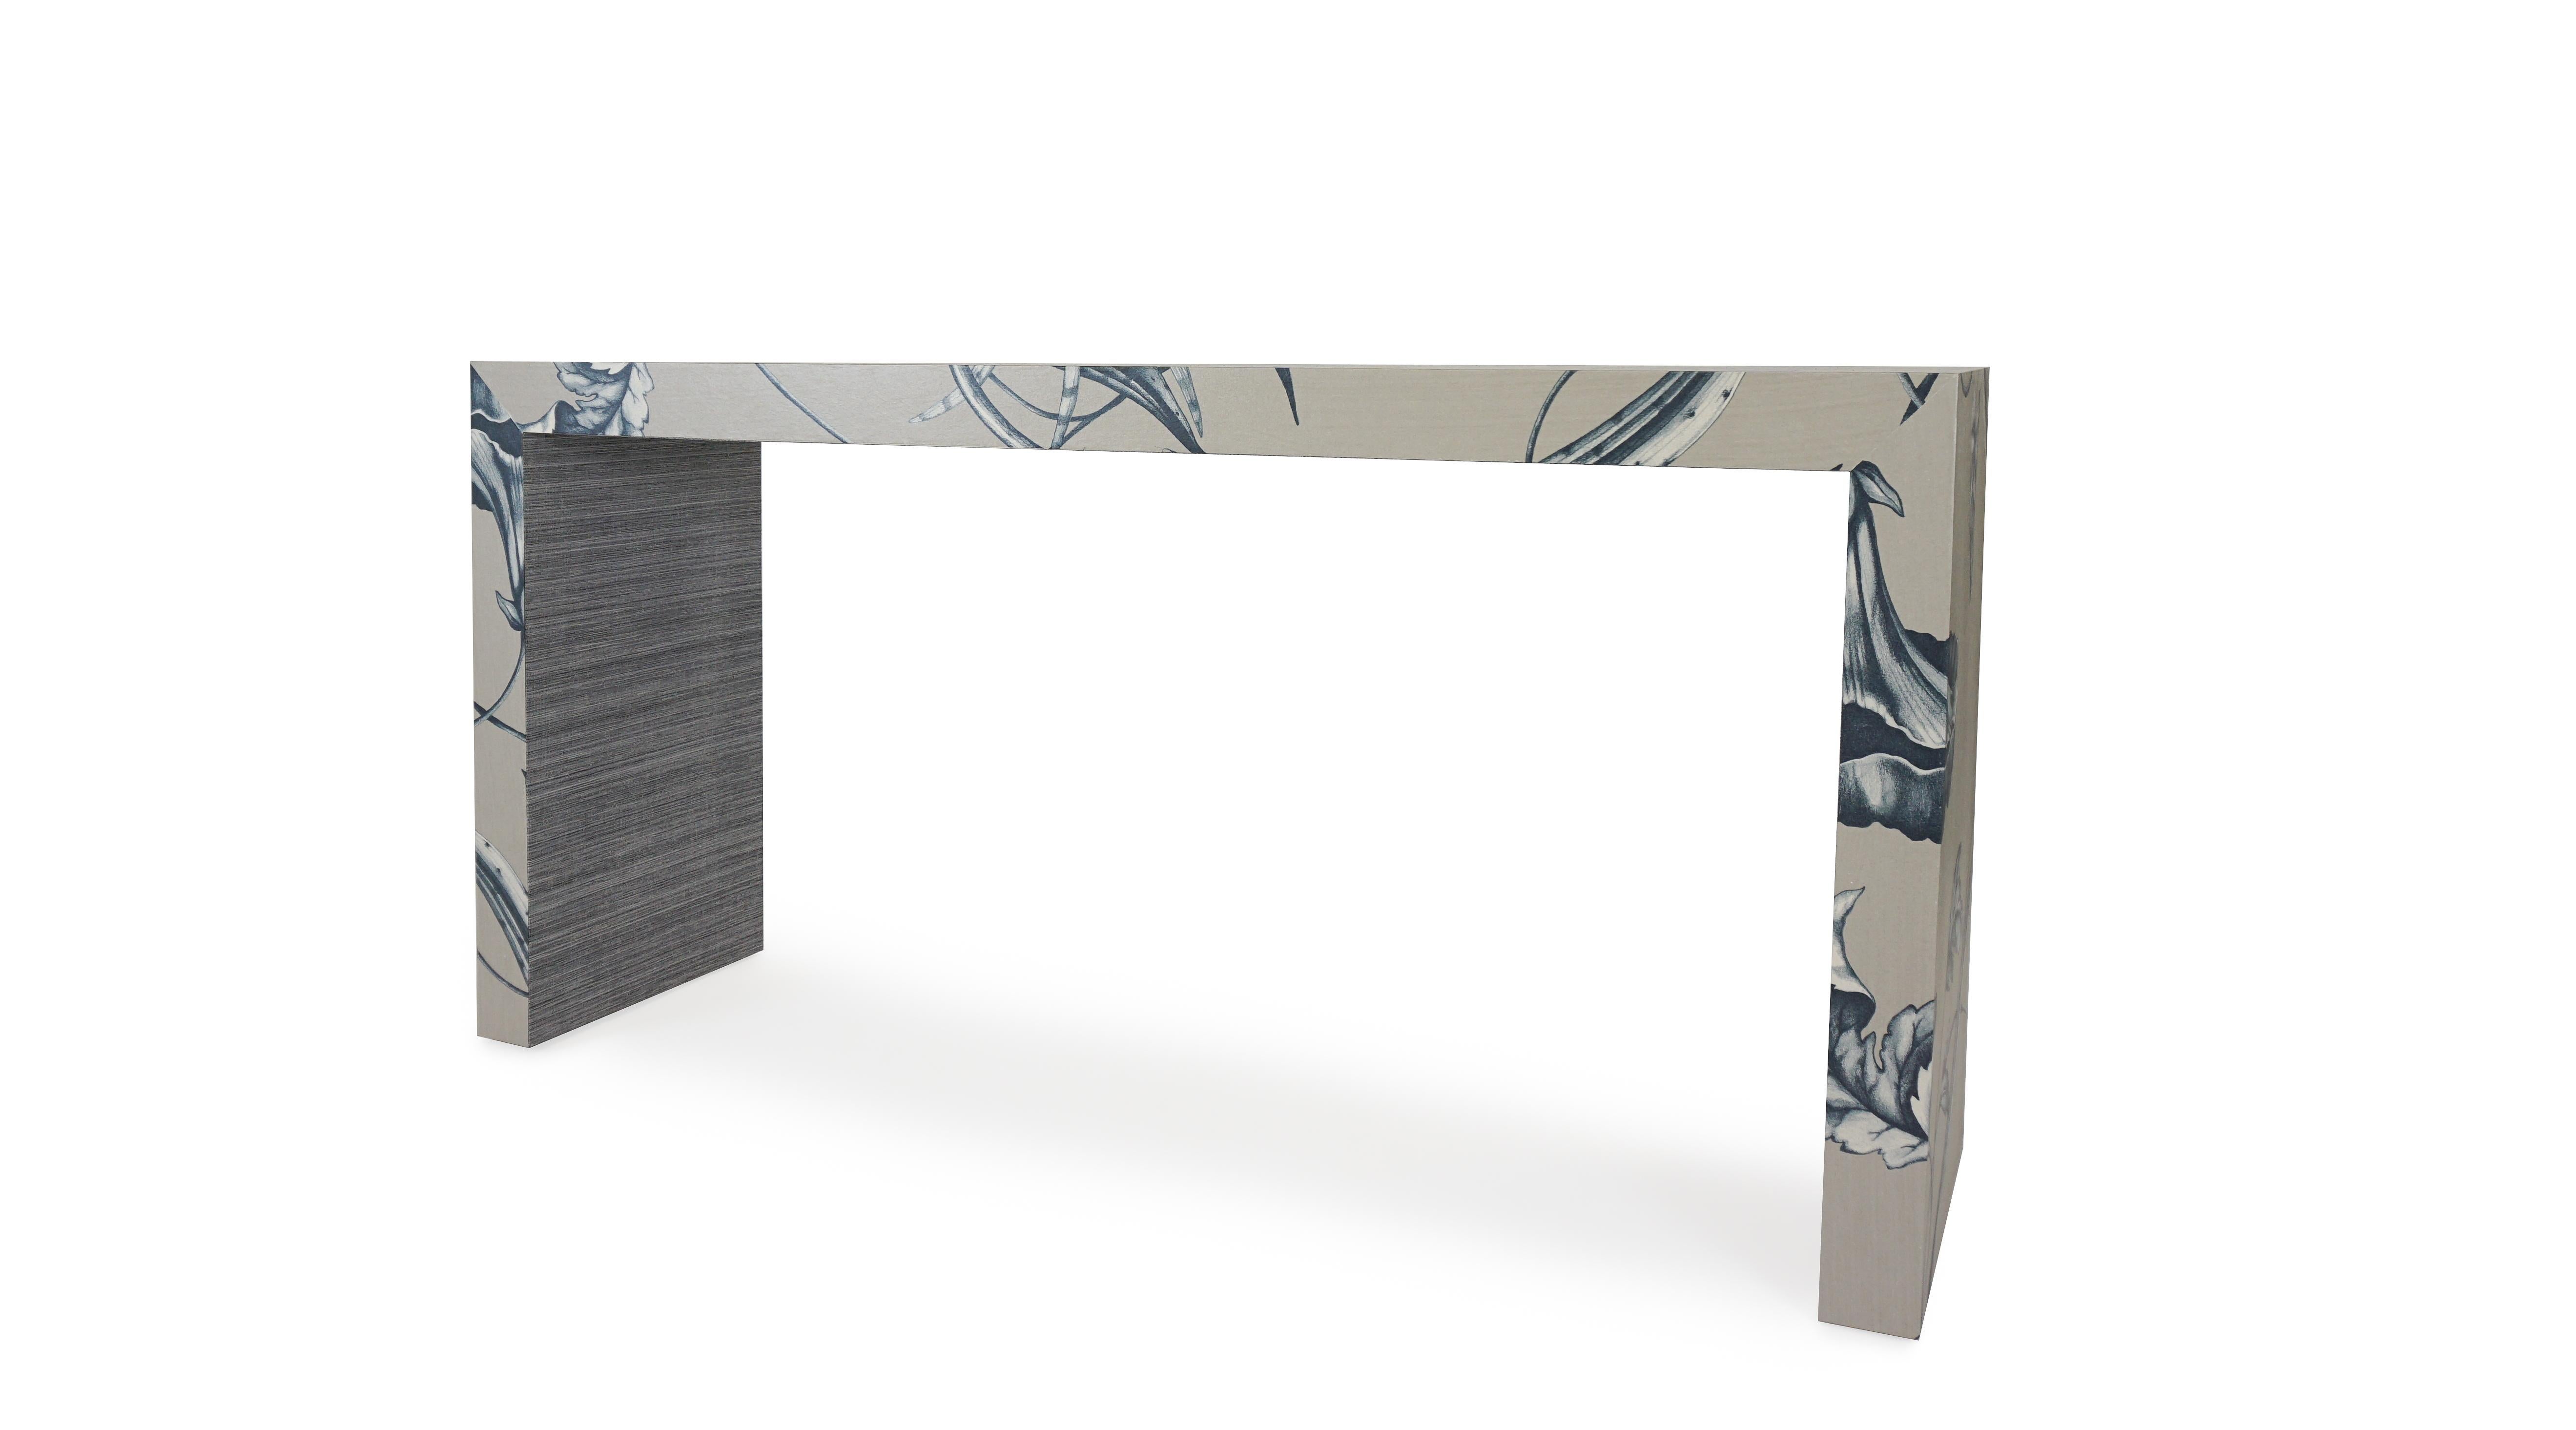 À propos de cette pièce
Cette table console en cascade personnalisable présente un design botanique tissé fantaisiste avec des effets métalliques et un dessous contrasté. Nos cadres sont construits avec de vrais bois durs ou du MDF et des